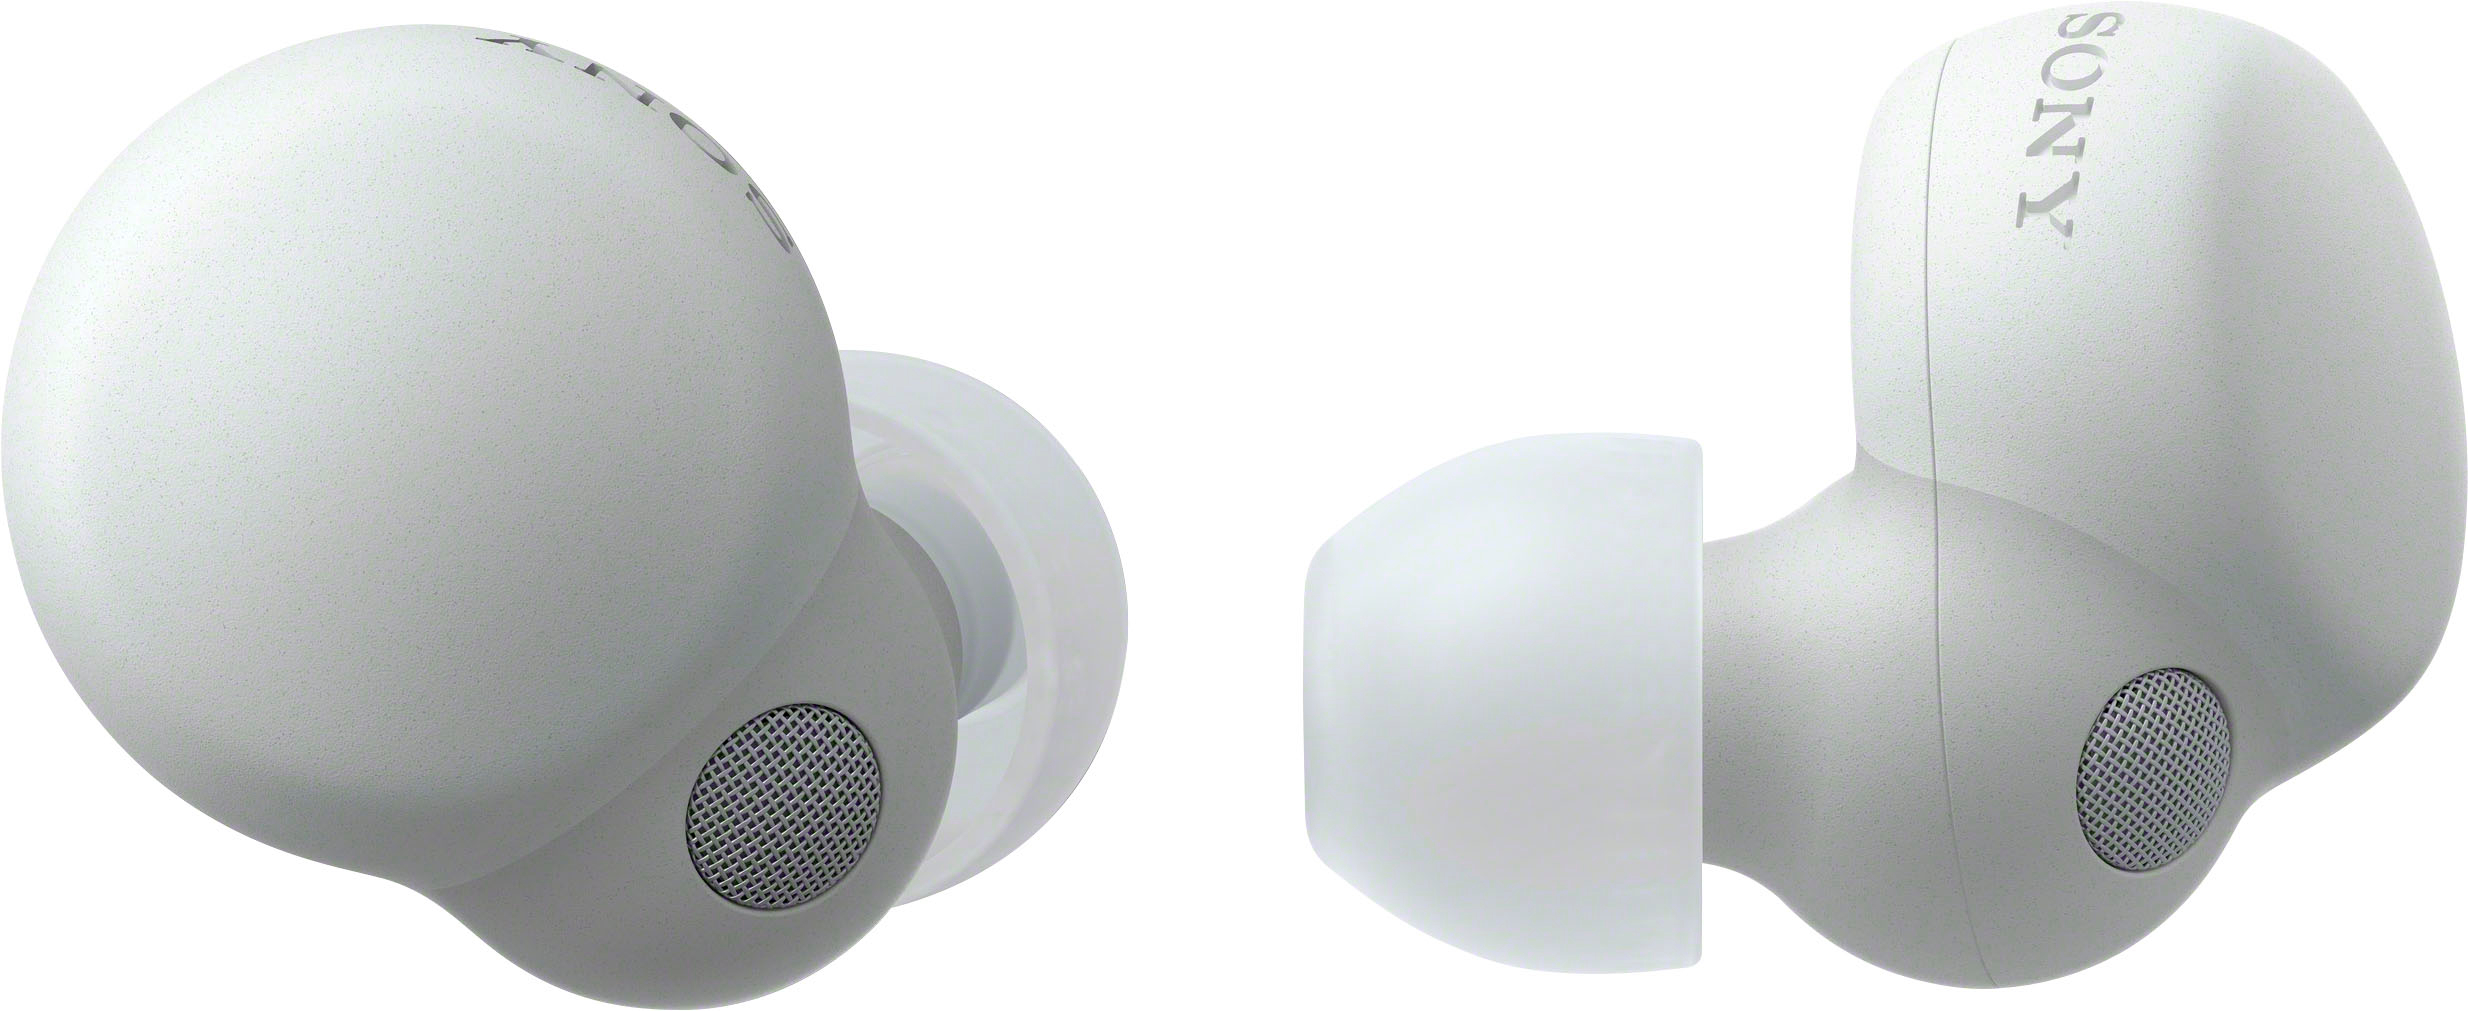 オーディオ機器 イヤフォン Sony LinkBuds S True Wireless Noise Canceling Earbuds White WFLS900N/W -  Best Buy